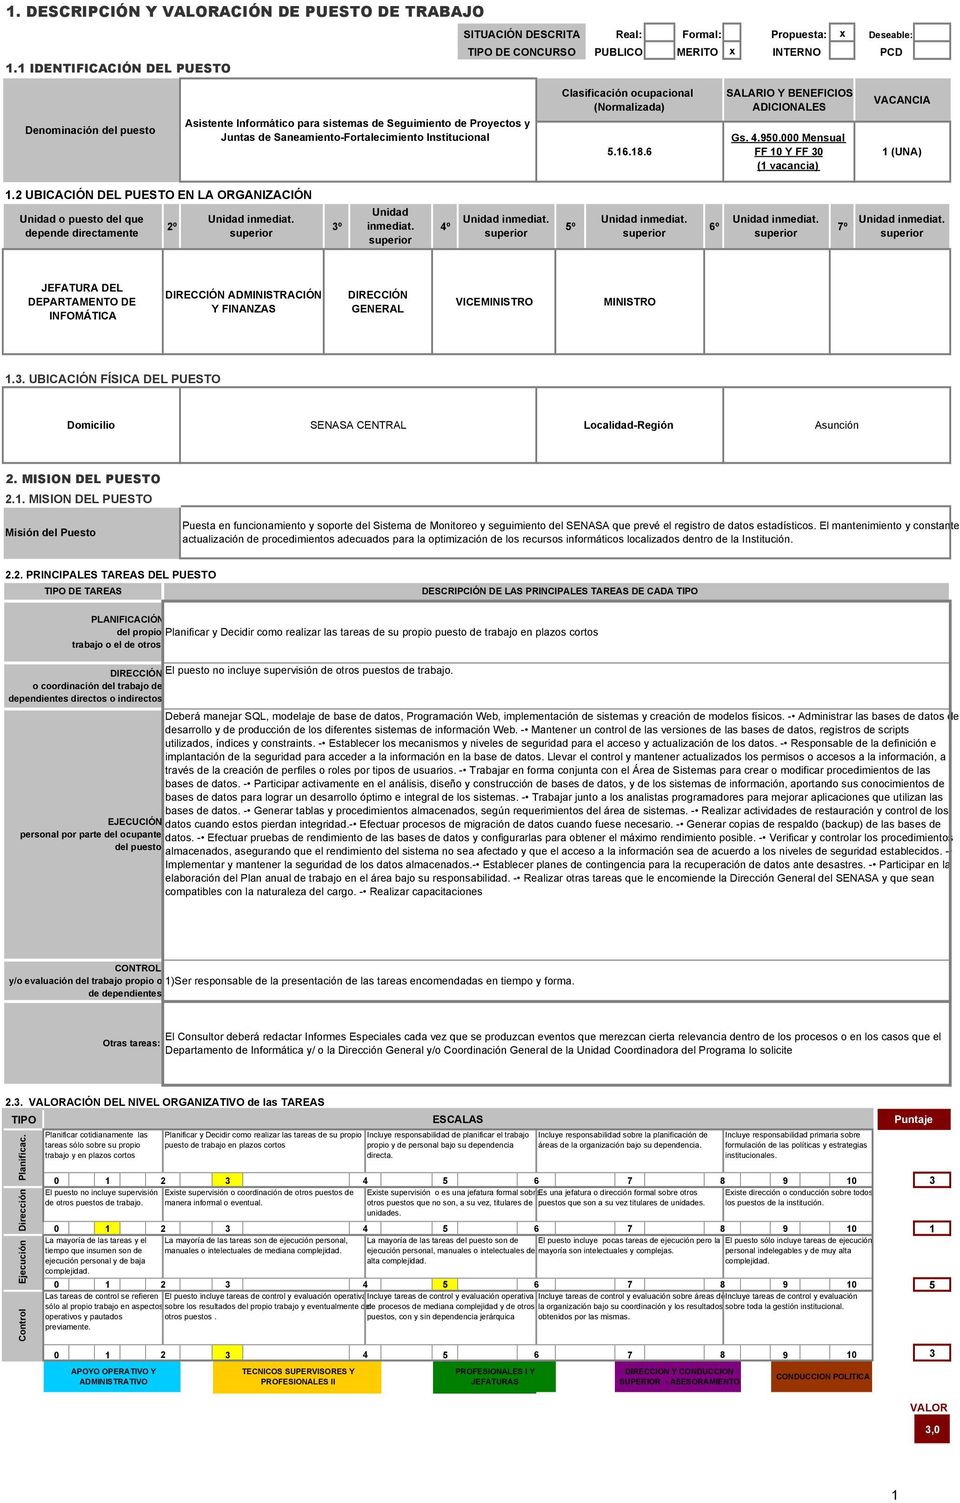 Saneamiento-Fortalecimiento Institucional Clasificación ocupacional (Normalizada) 5.6.8.6 SALARIO Y BENEFICIOS ADICIONALES Gs. 4.950.000 Mensual FF 0 Y FF 0 ( vacancia) VACANCIA (UNA).